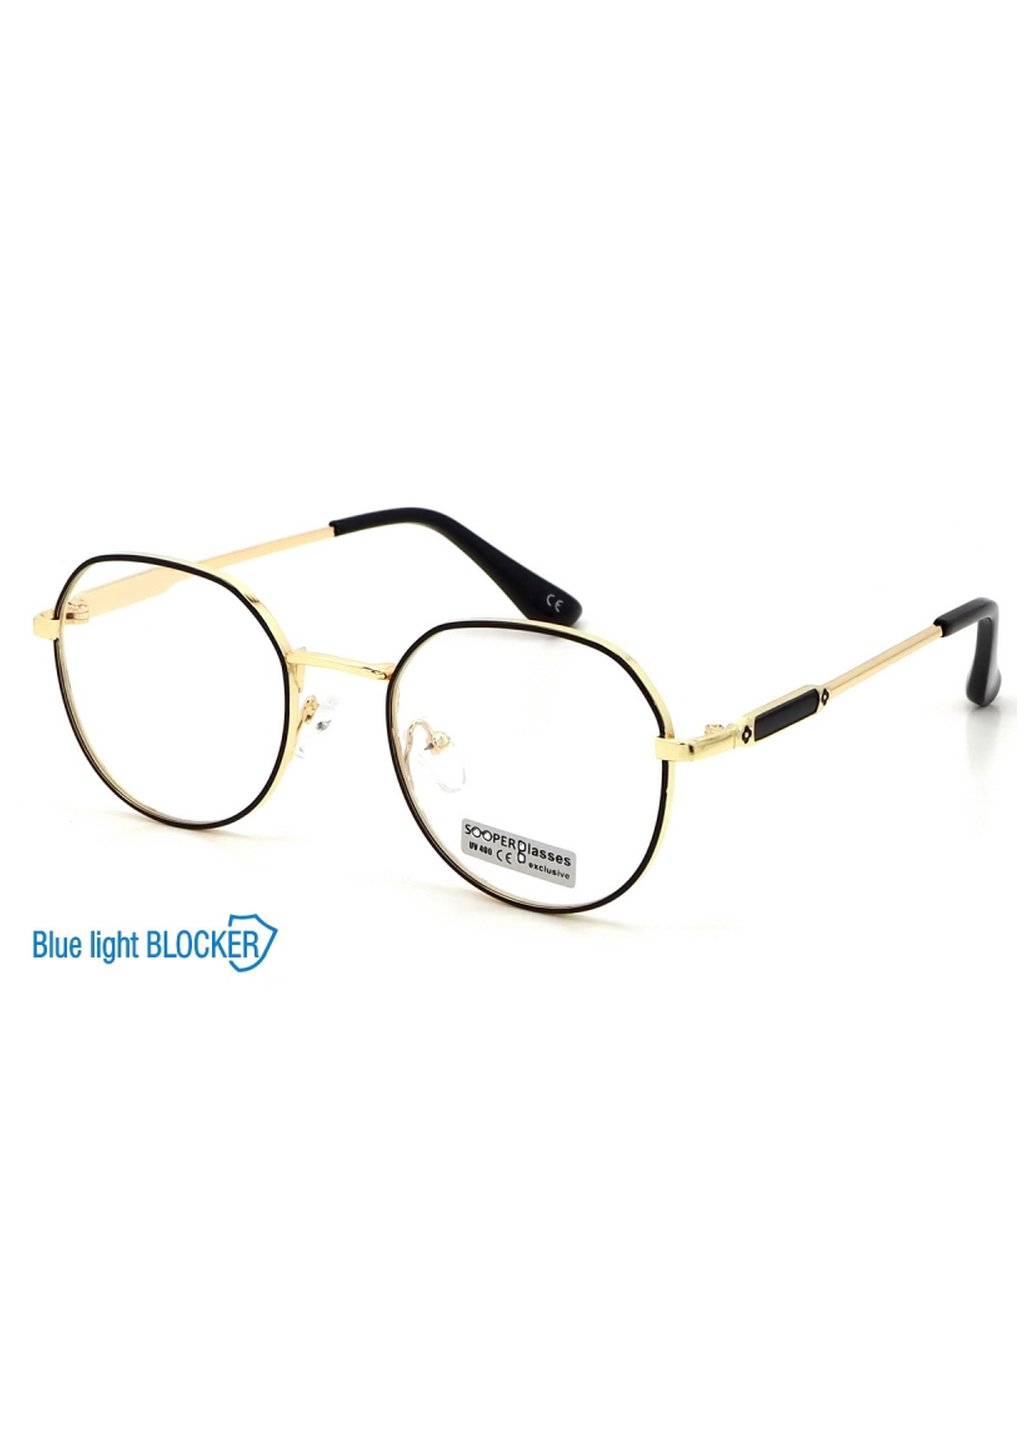 Купить Очки для работы за компьютером Cooper Glasses в золотой оправе 124007 в интернет-магазине